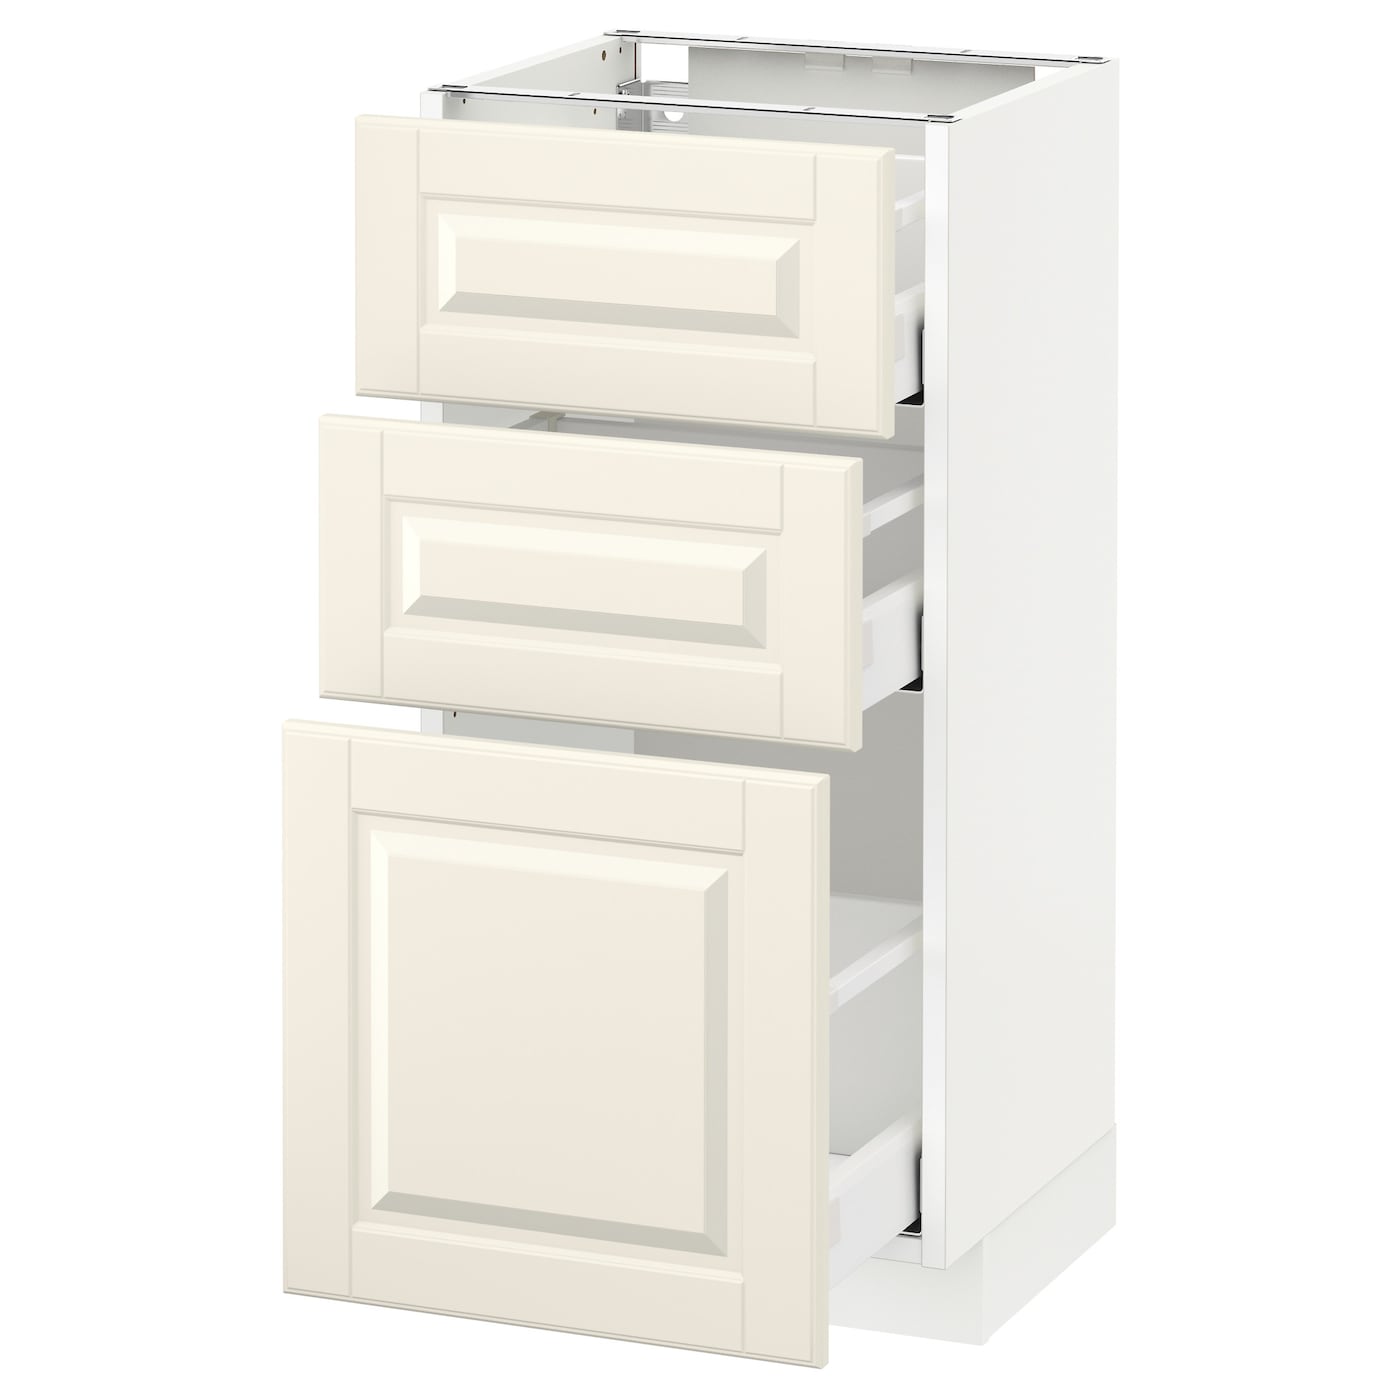 Напольный кухонный шкаф - IKEA METOD MAXIMERA, 88x39,5x40см, белый/светло-бежевый, МЕТОД МАКСИМЕРА ИКЕА